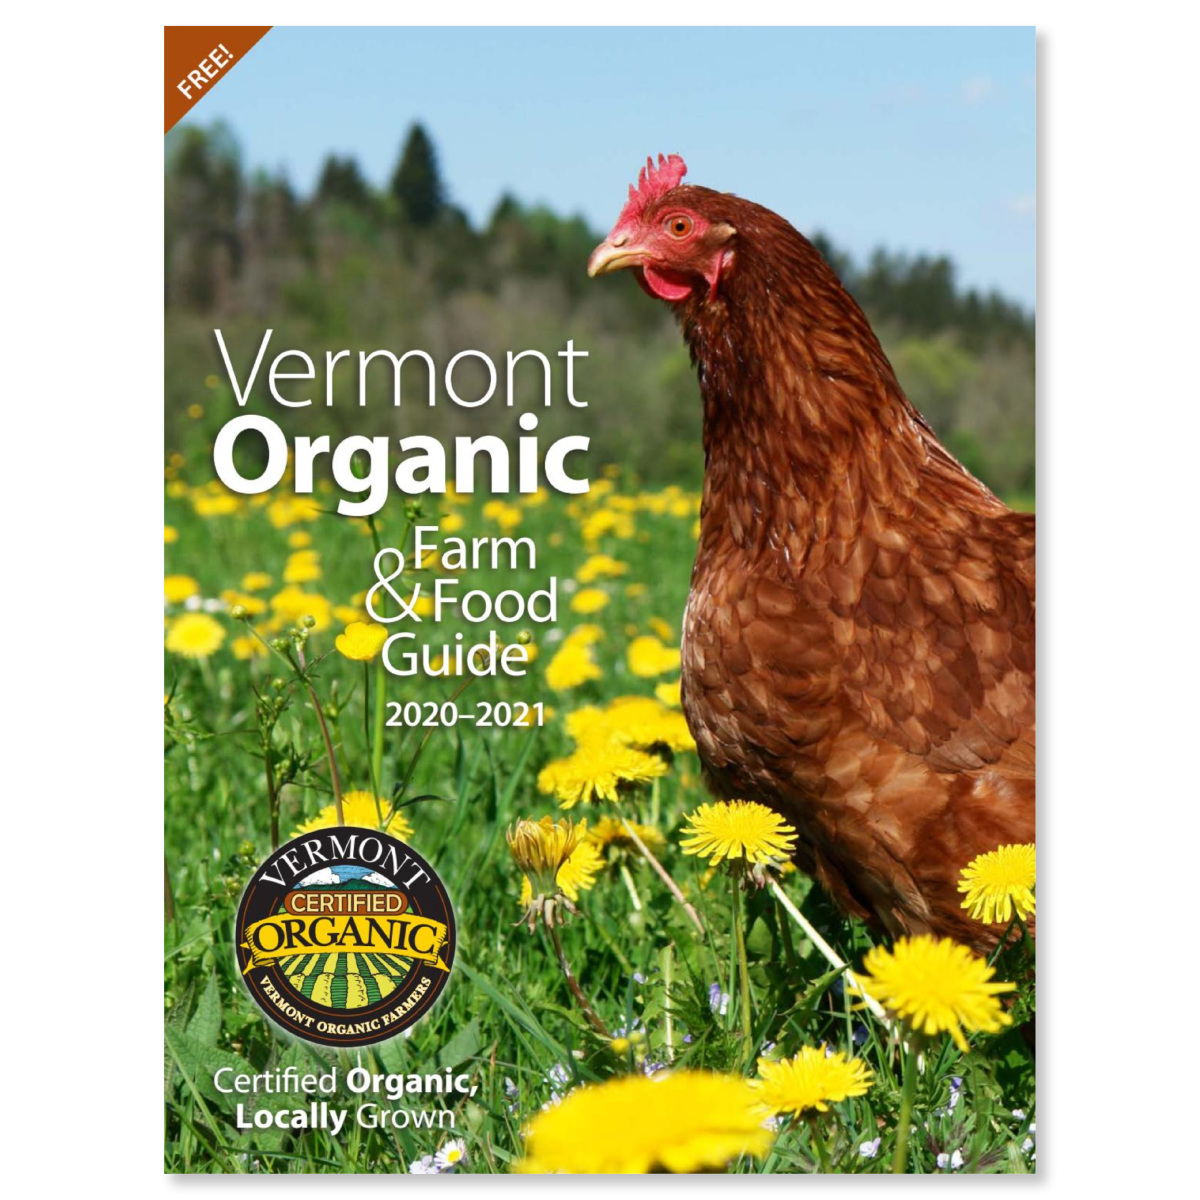 NOFA Organic Guide